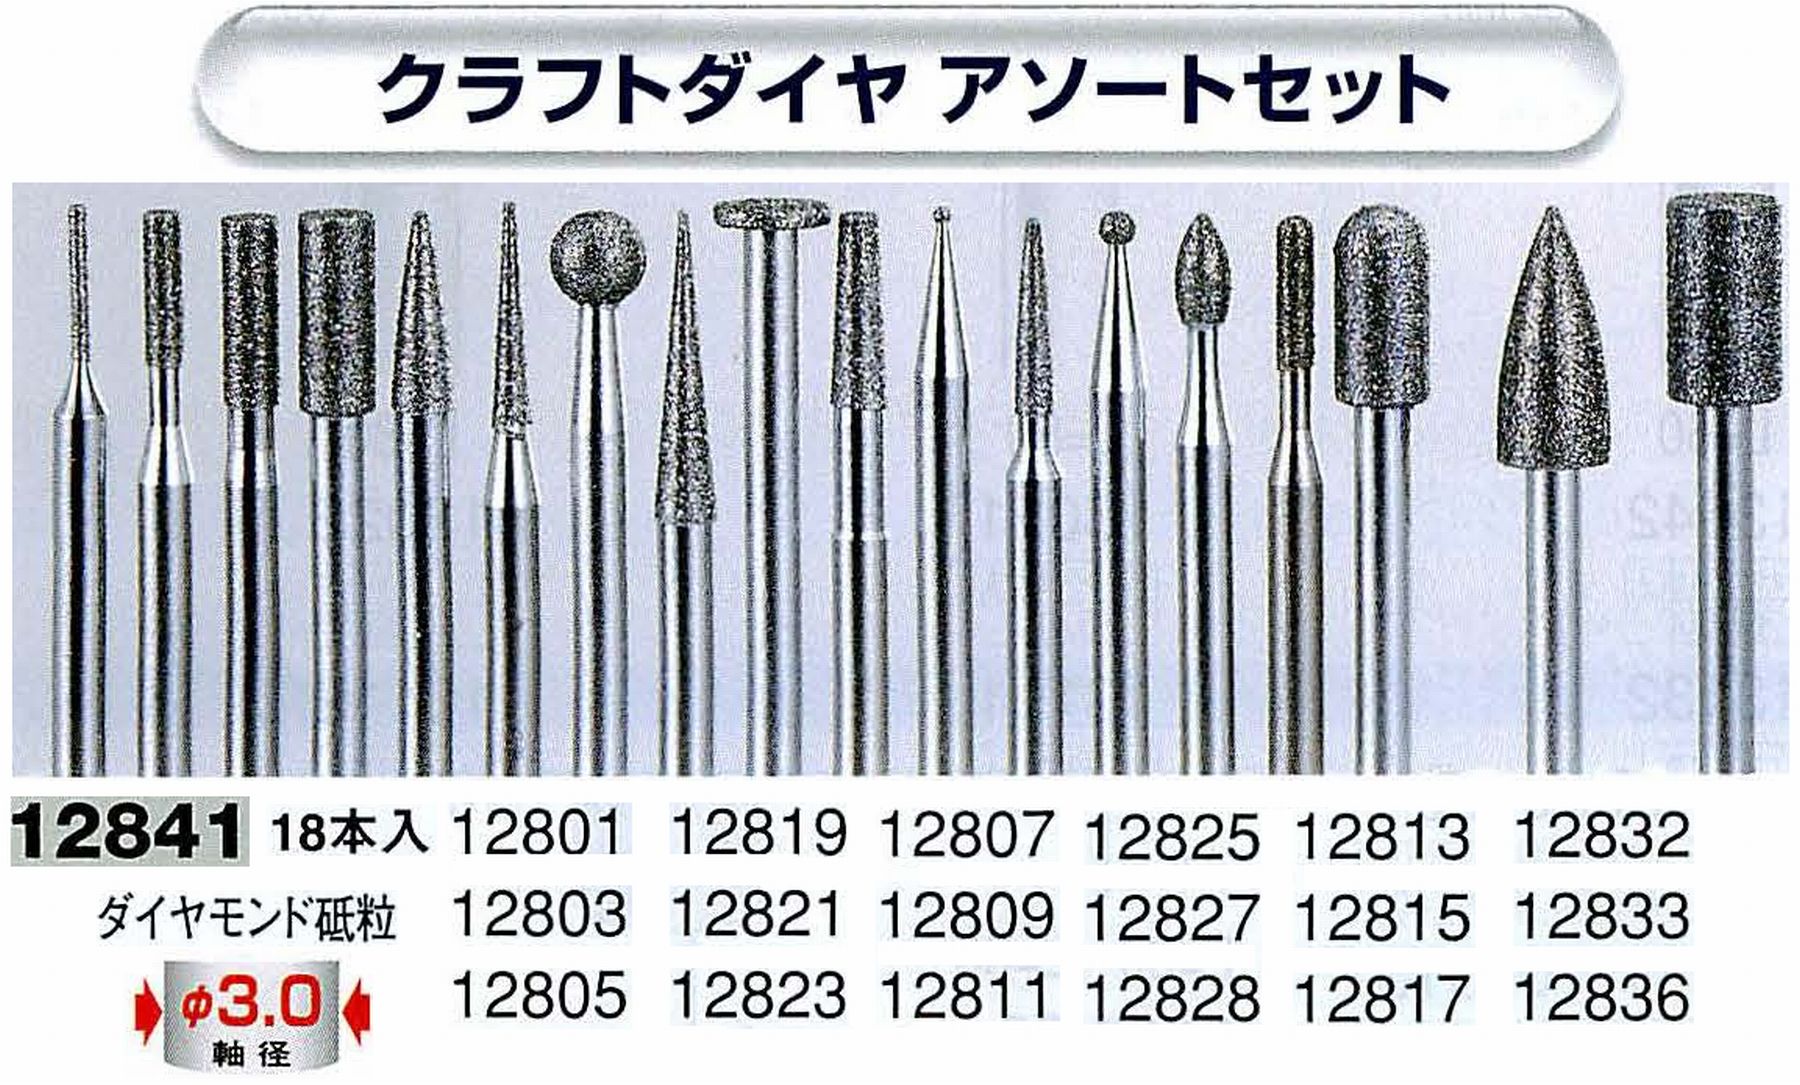 ナカニシ/NAKANISHI クラフトダイヤアソートセット ダイヤモンド砥粒 軸径(シャンク)φ3.0mm 12841